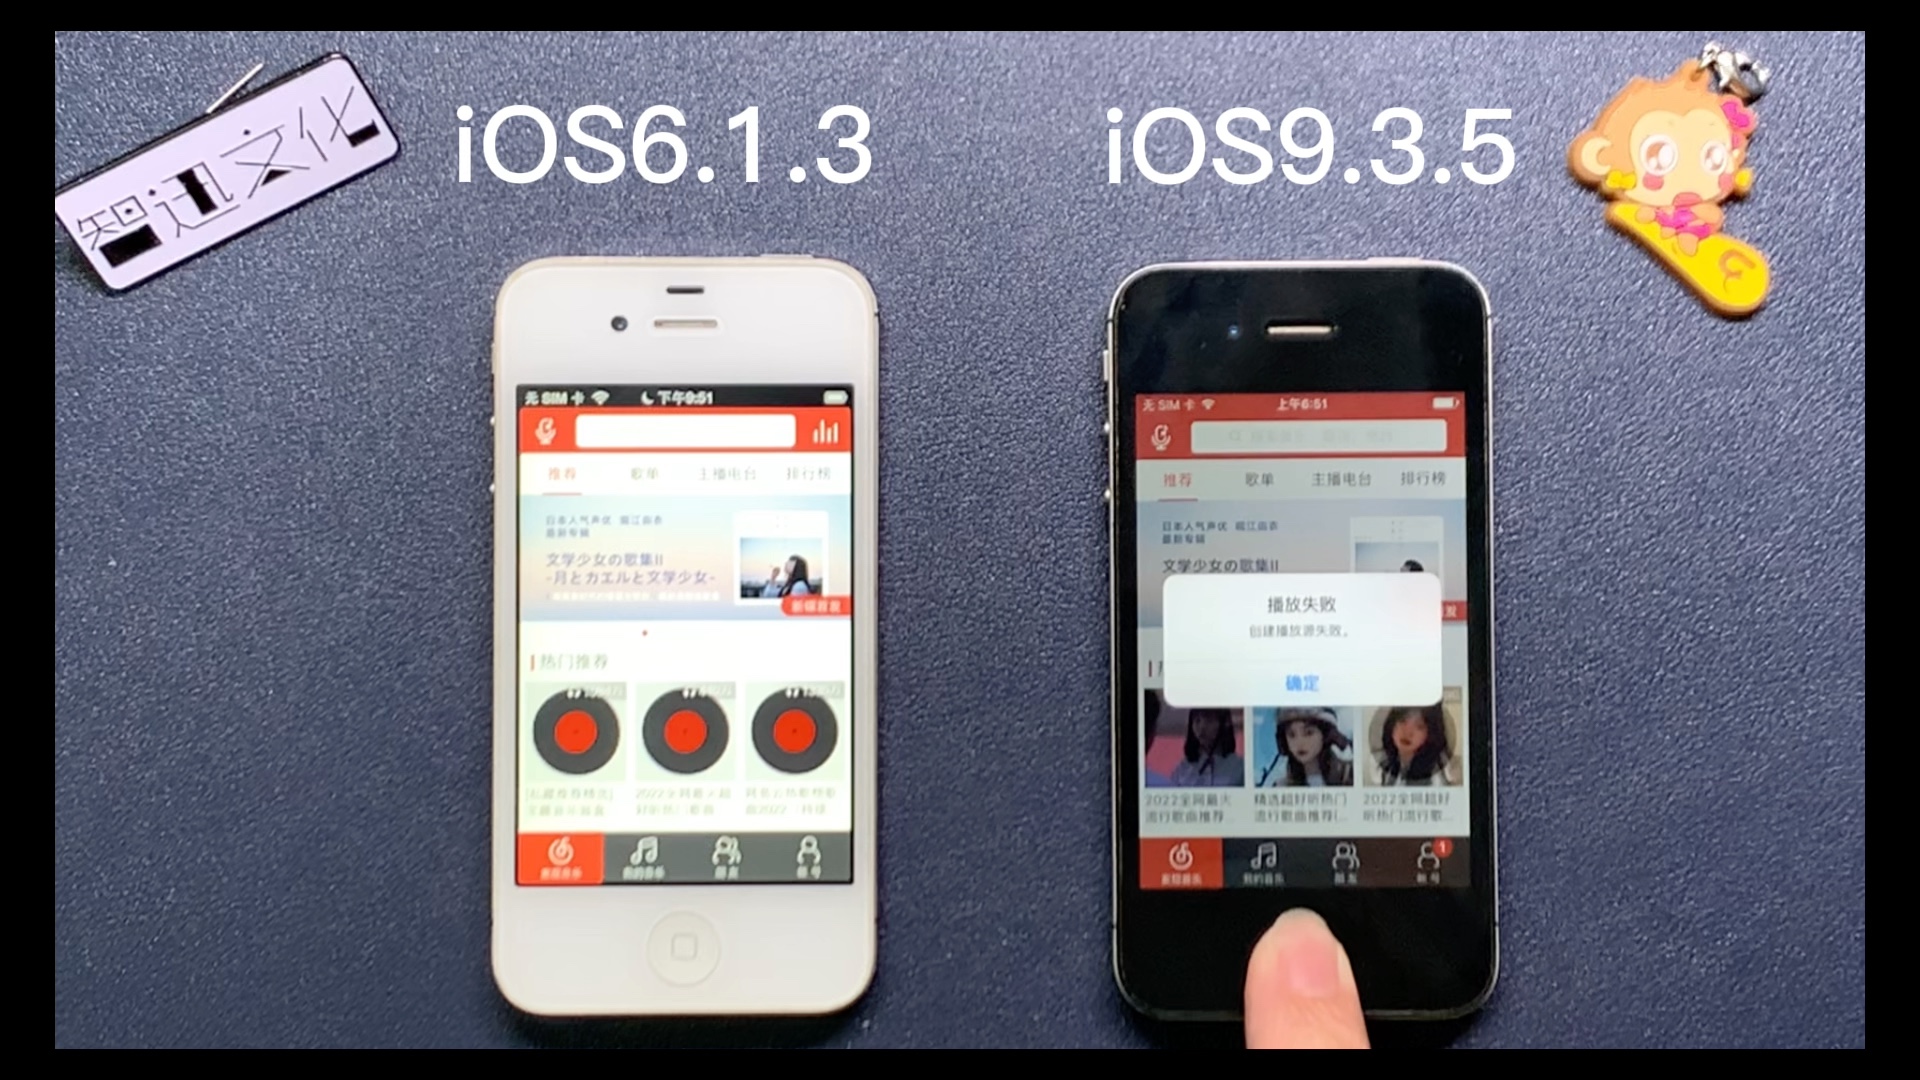 十年前的iPhone4S，拟物iOS6对比扁平iOS9，速度感觉差不多。